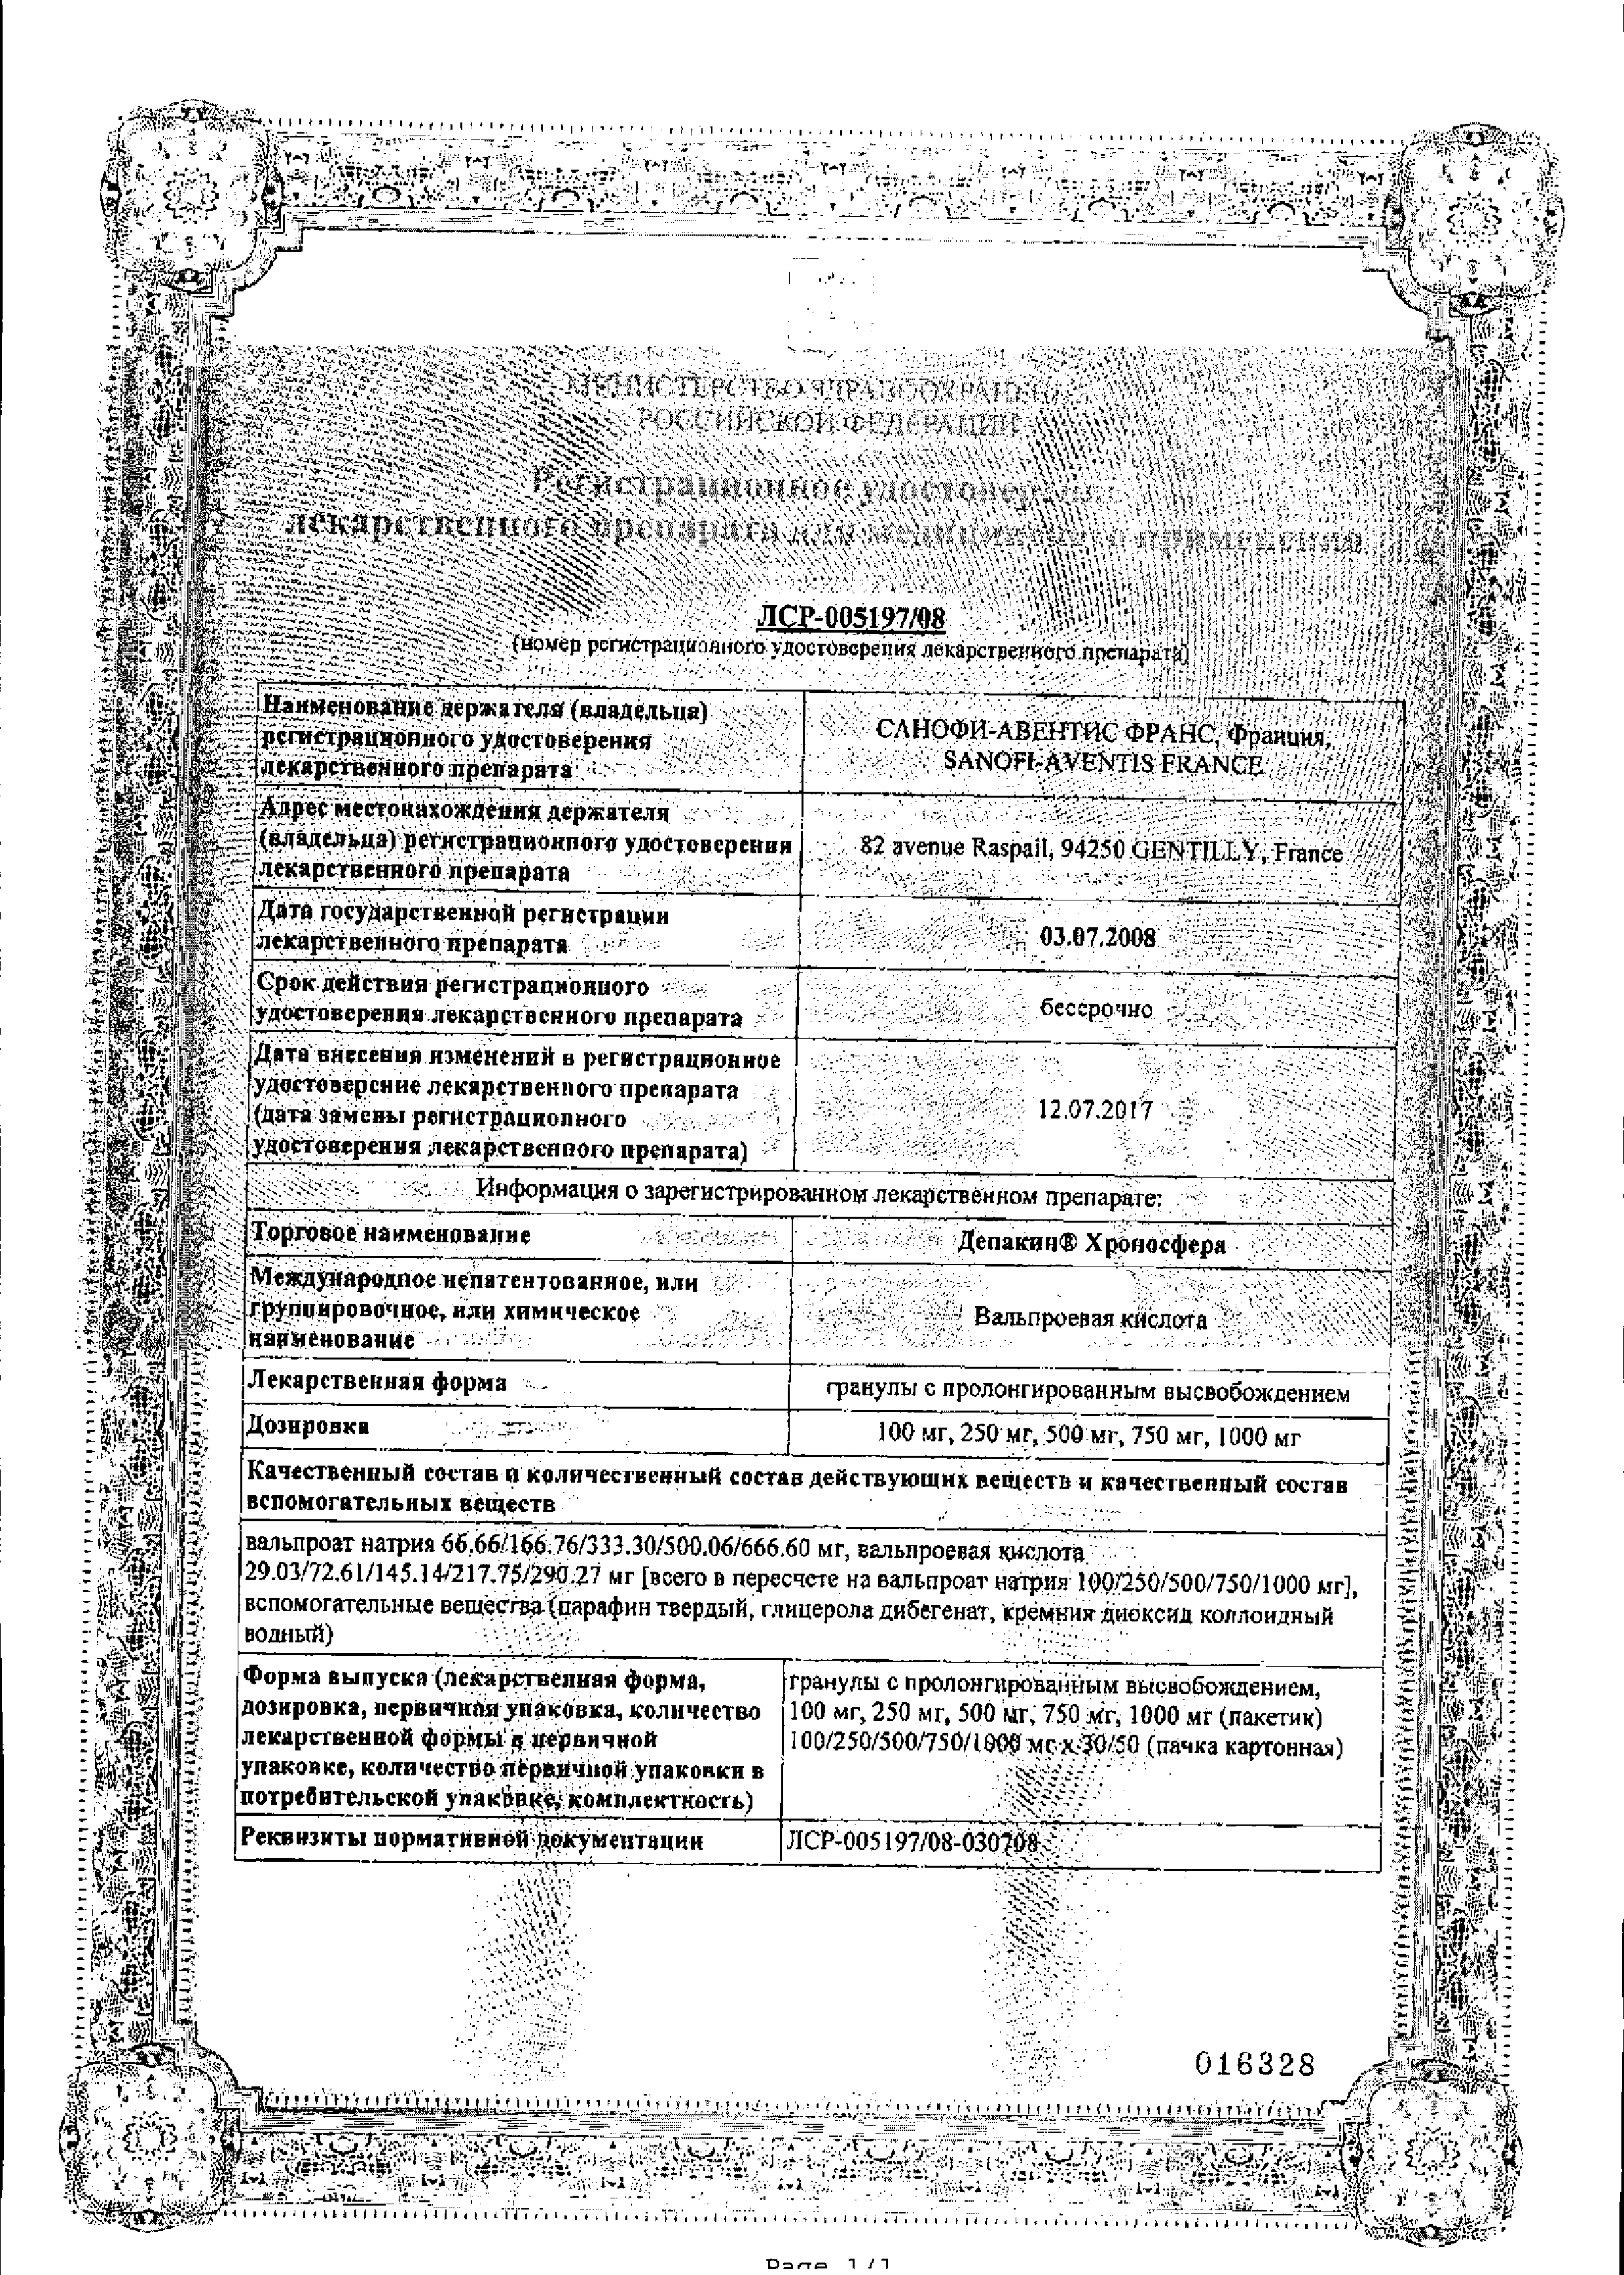 Депакин Хроносфера сертификат